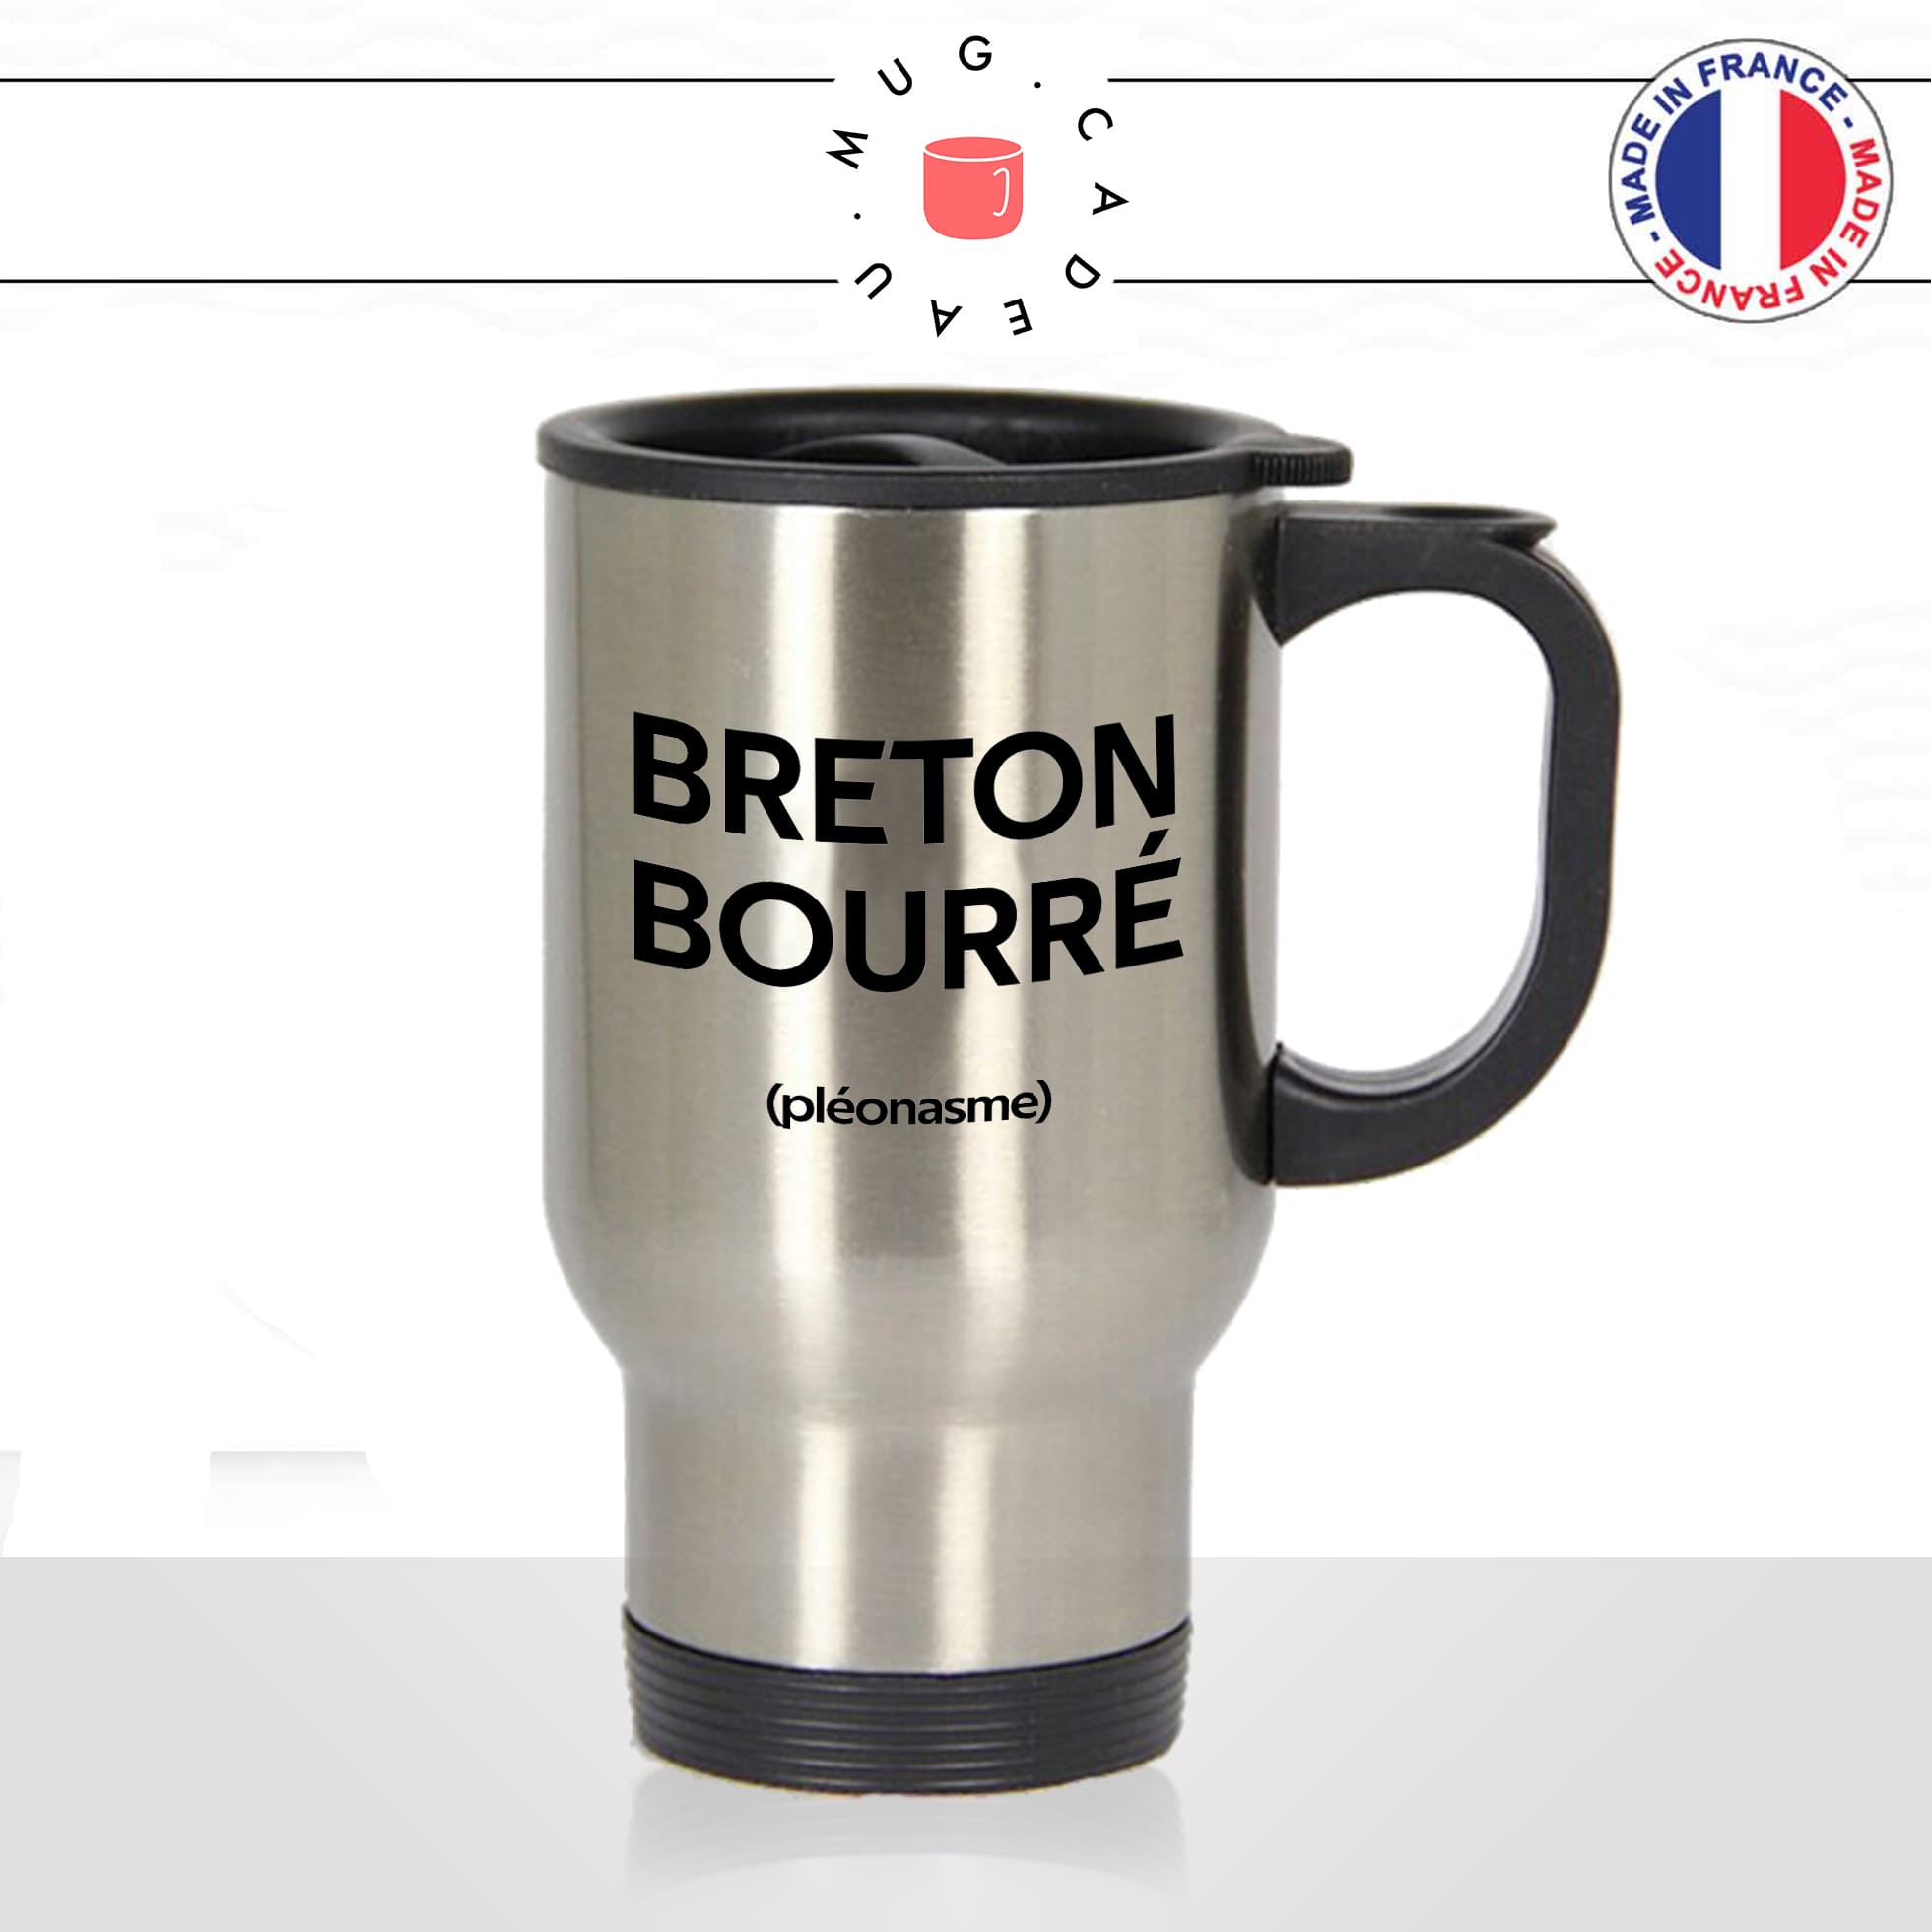 mug-tasse-thermos-isotherme-voyage-breton-bourré-pleonasme-apéro-biere-alcool-bretagne-france-copains-vin-humour-fun-idée-cadeau-original2